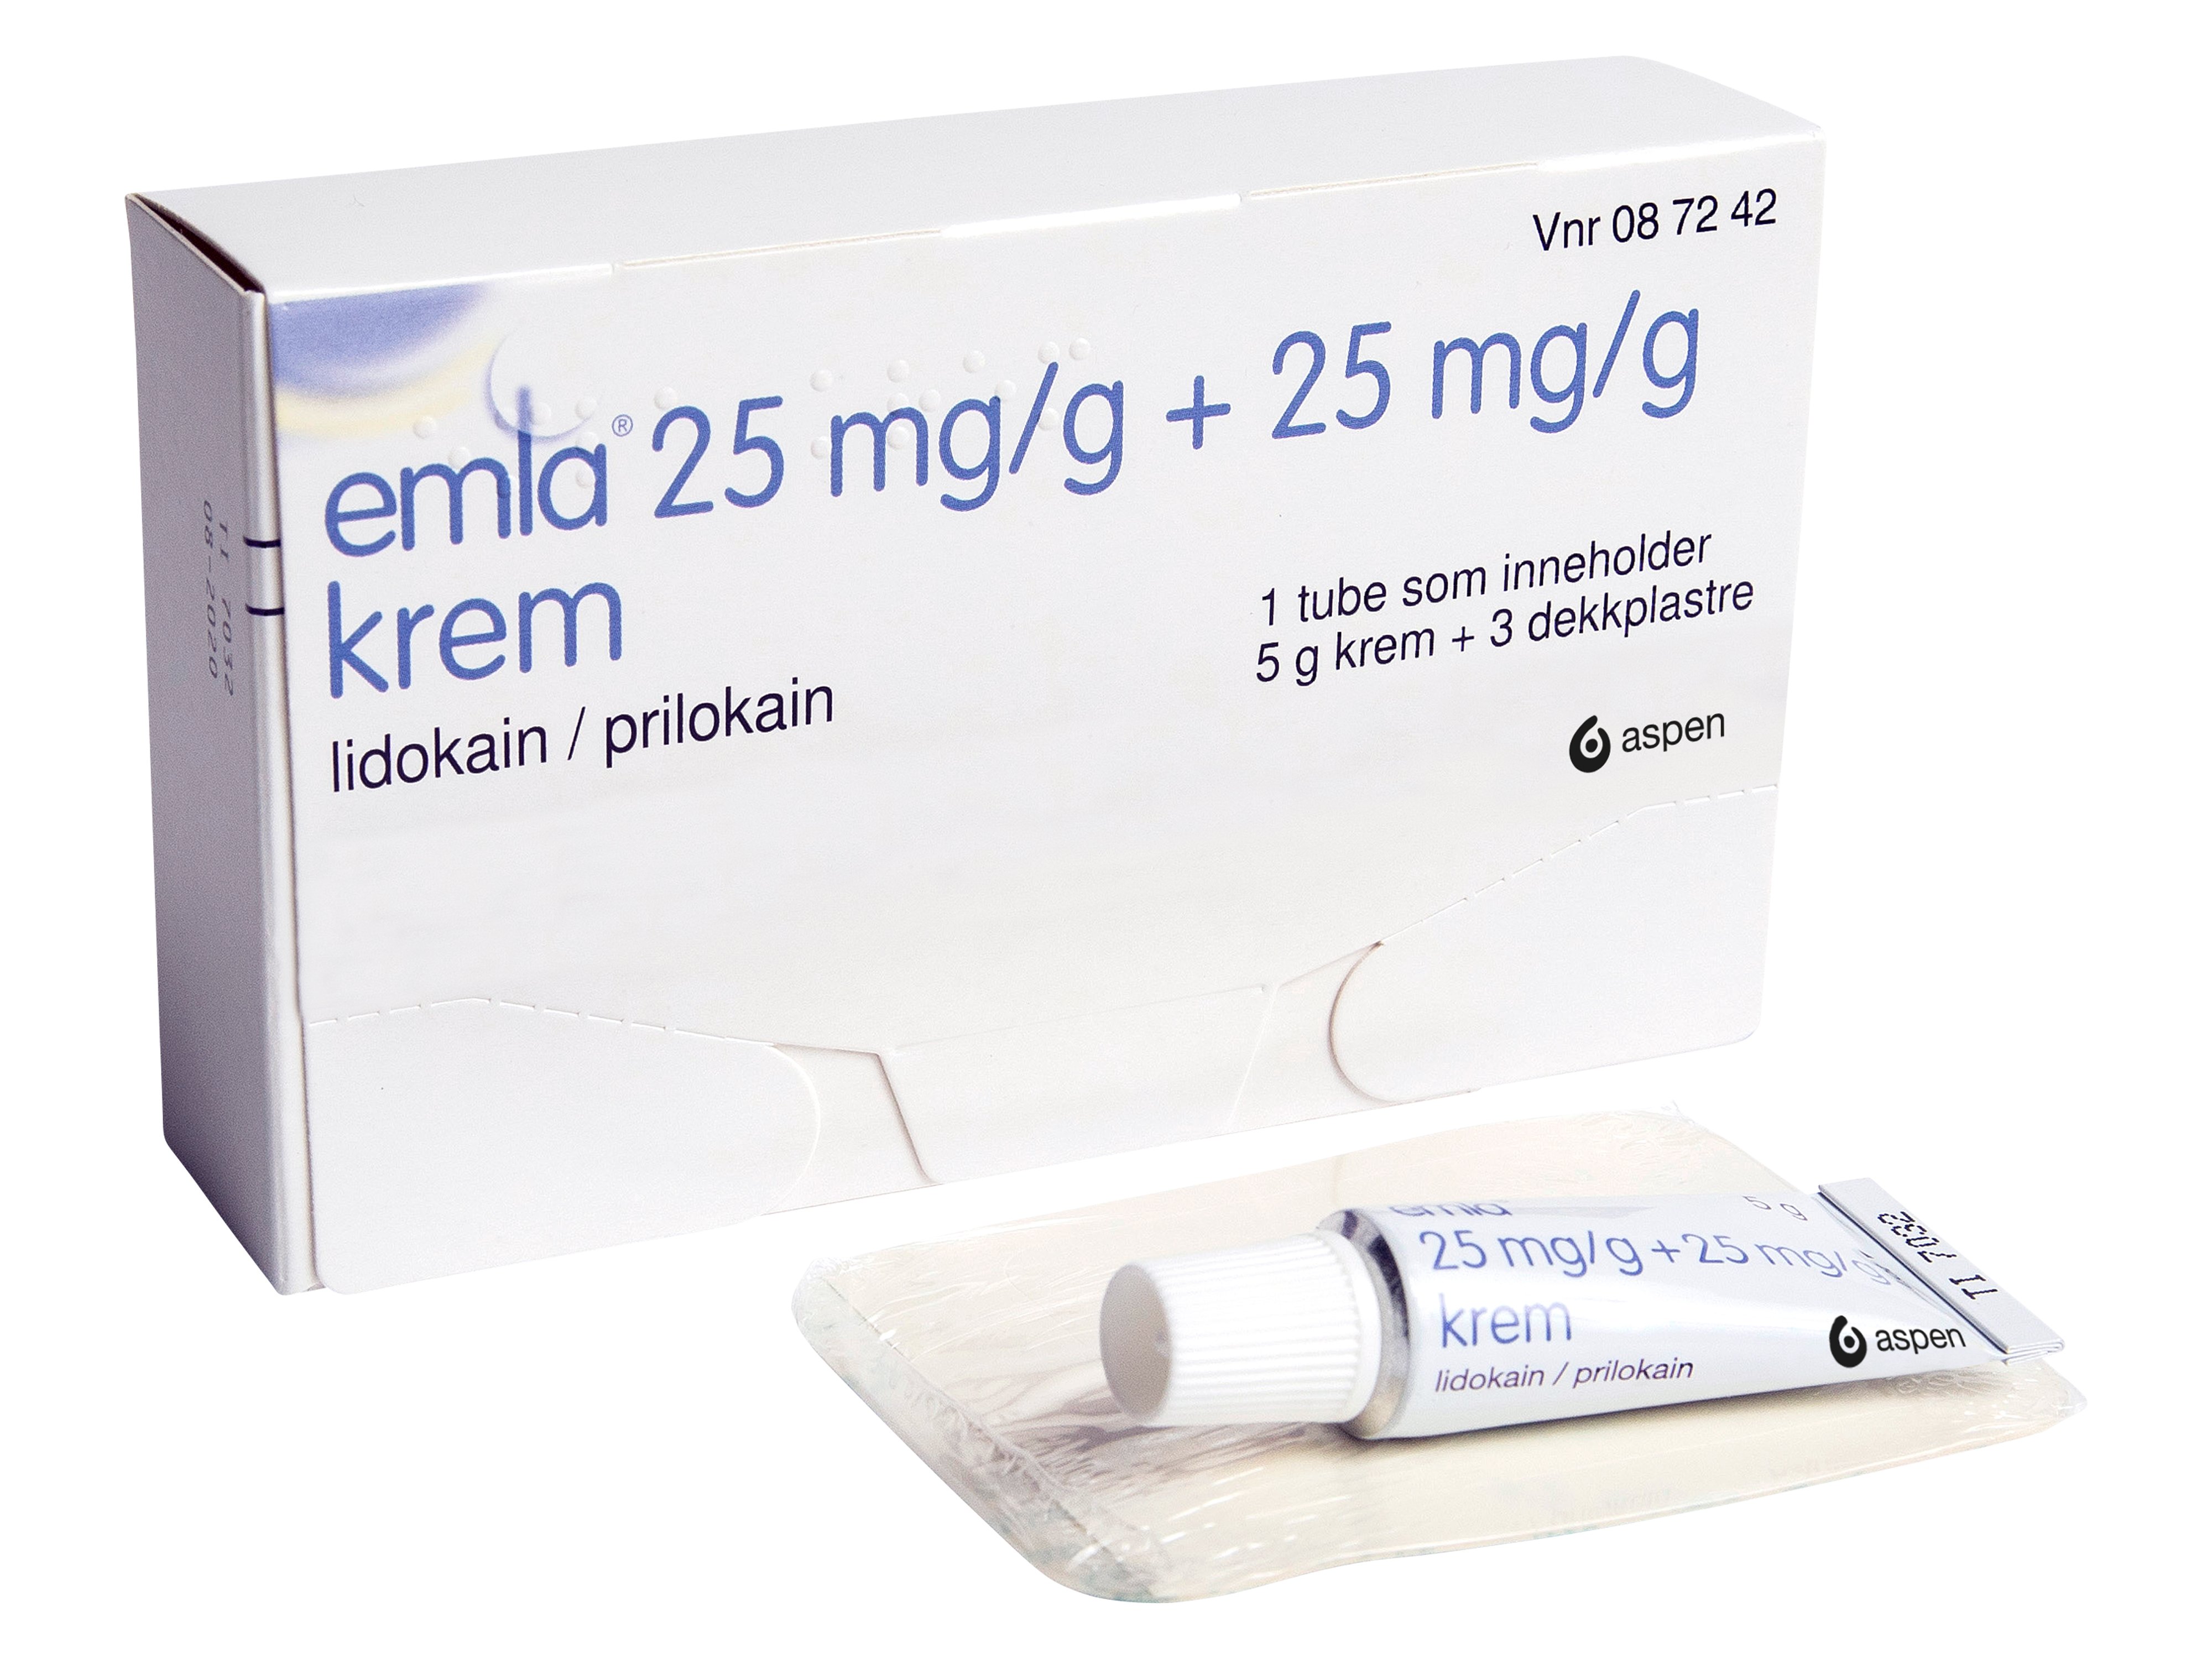 Emla Krem 25 mg/g og dekkplaster, 5 g.